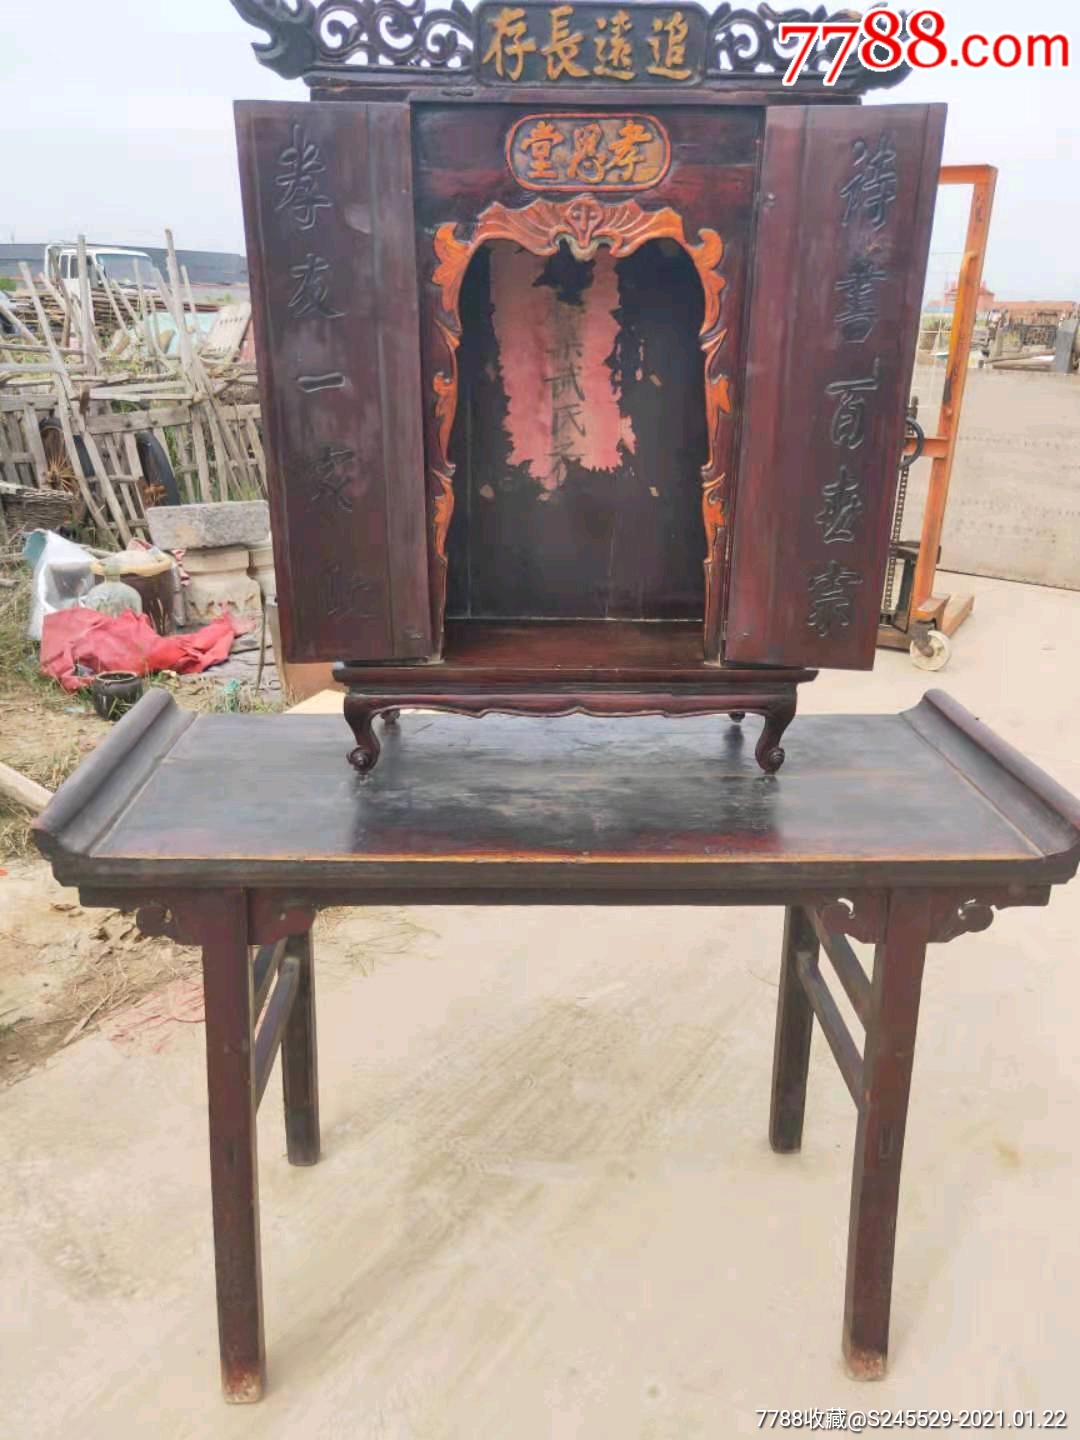 妈祖神龛 福建湄州-中国民间工艺-图片